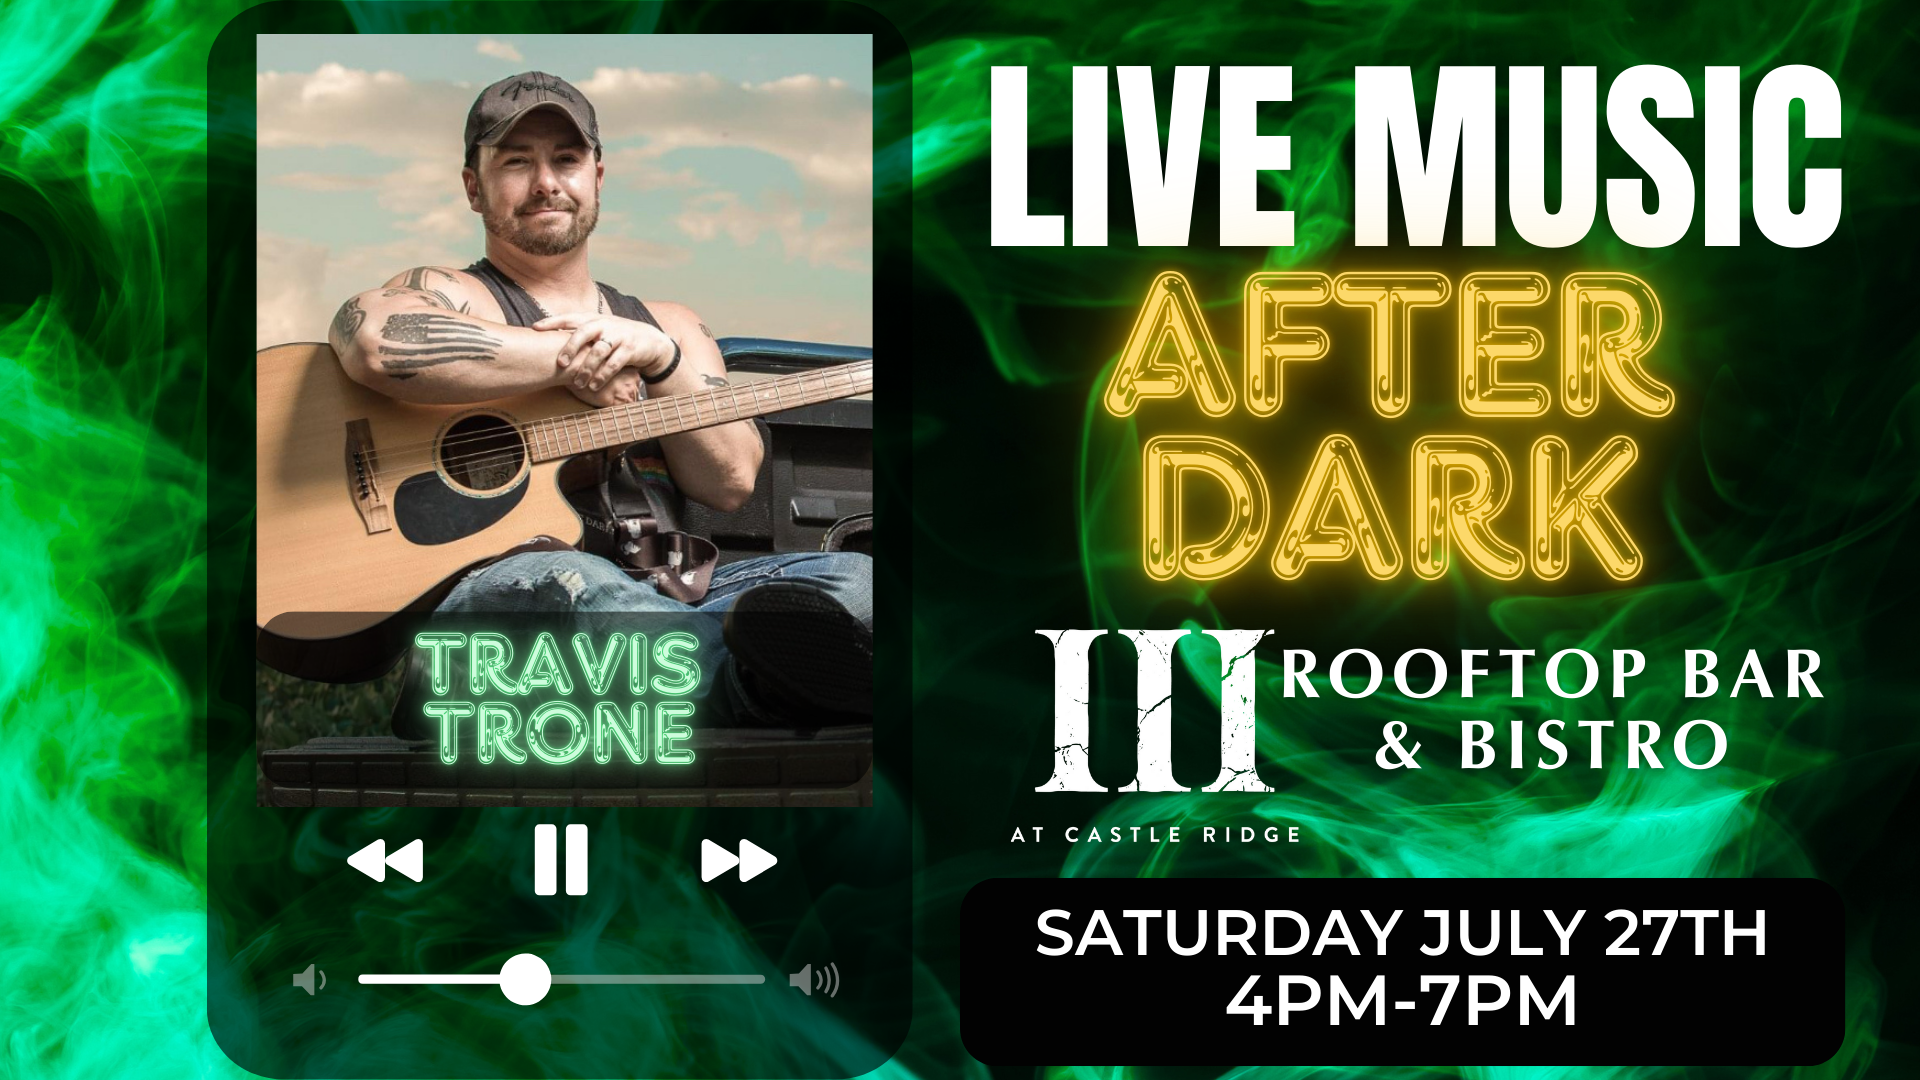 III Rooftop Bar & Bistro LIVE Music After Dark |Travis Trone